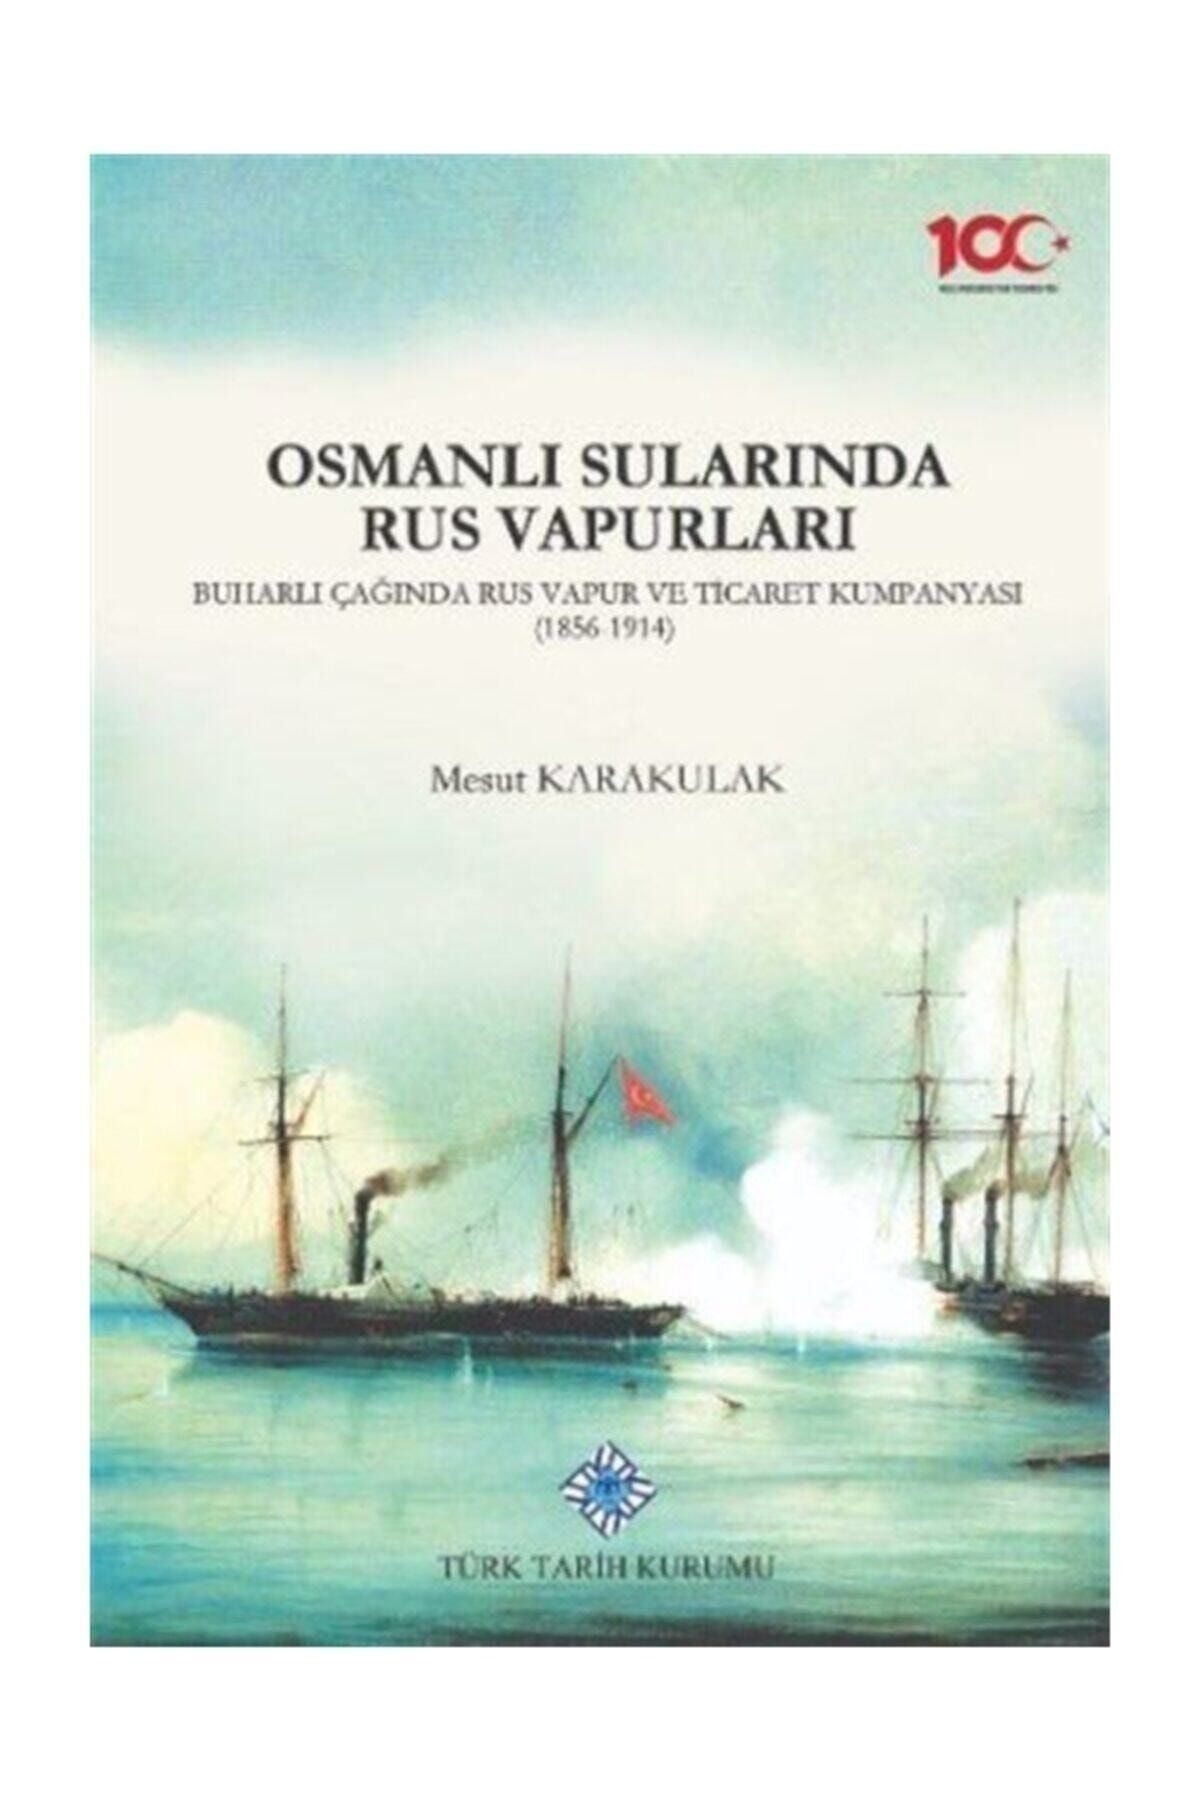 Türk Tarih Kurumu Yayınları Osmanlı Sularında Rus Vapurları, Buharlı Çağında Rus Vapur Ve Ticaret Kumpanyası (1856-1914)